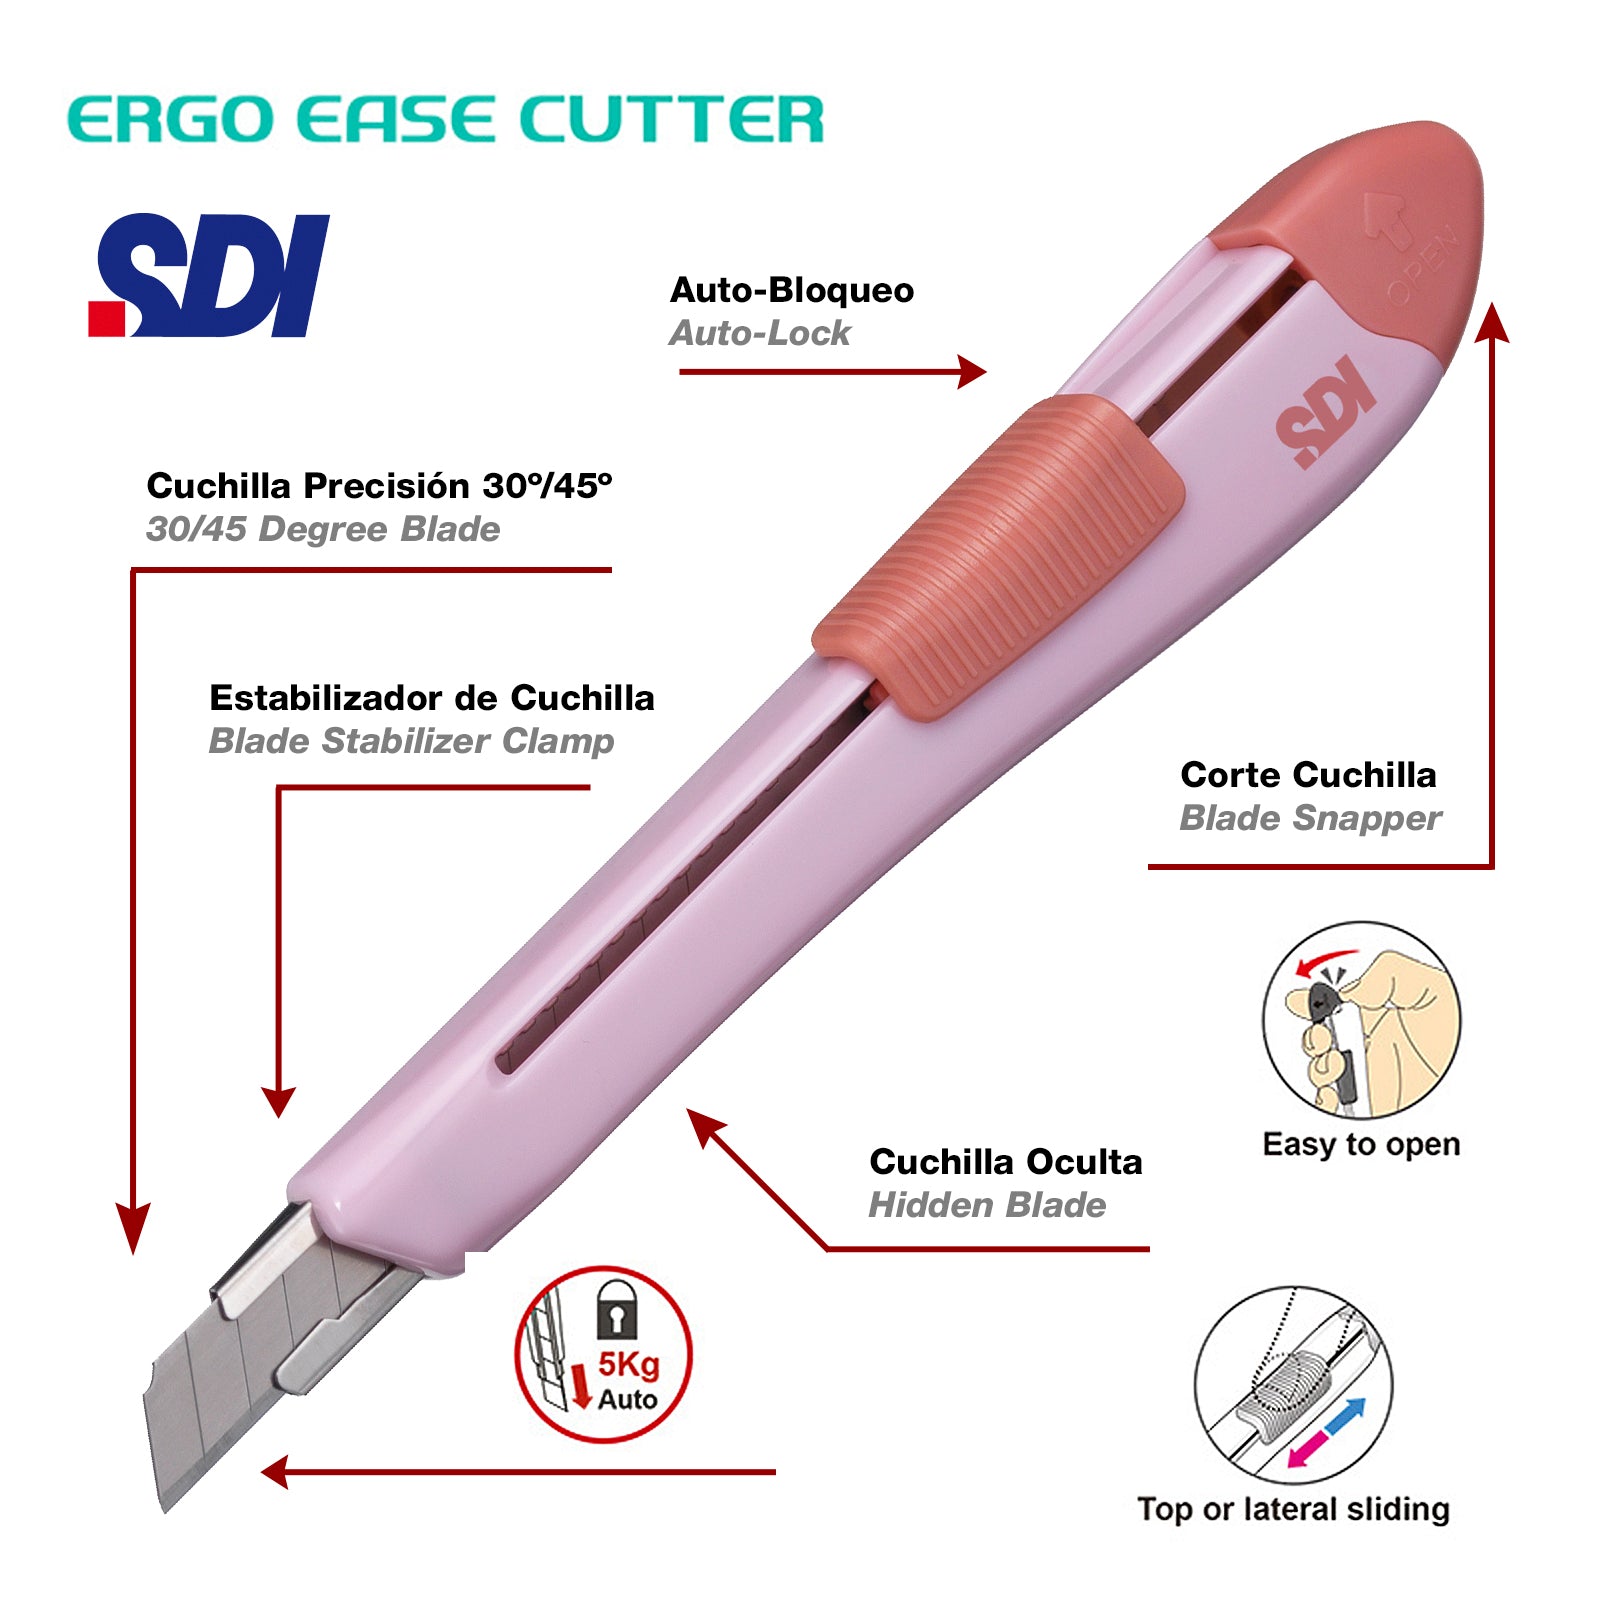 SDI Ergo Ease -  Cutter para Manualidades con Diseño Ergonómico. Rosa